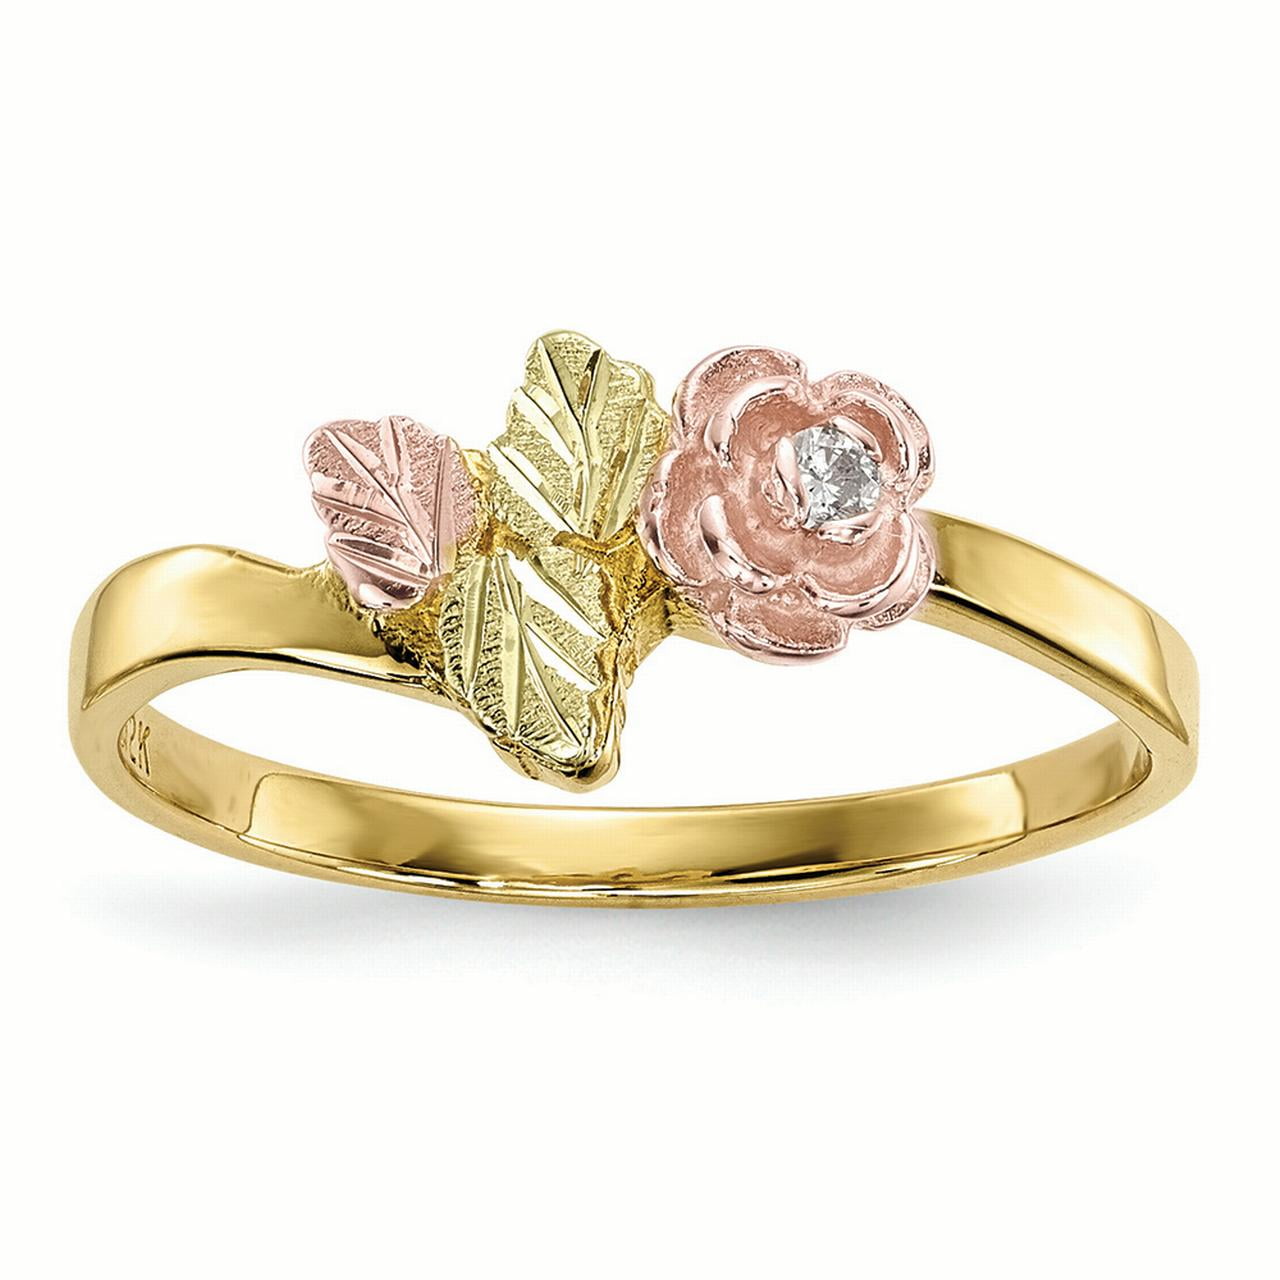 10K Tri Color Gold 10.37 MM Black Hills Gold Diamond Rose Ring, Size 7